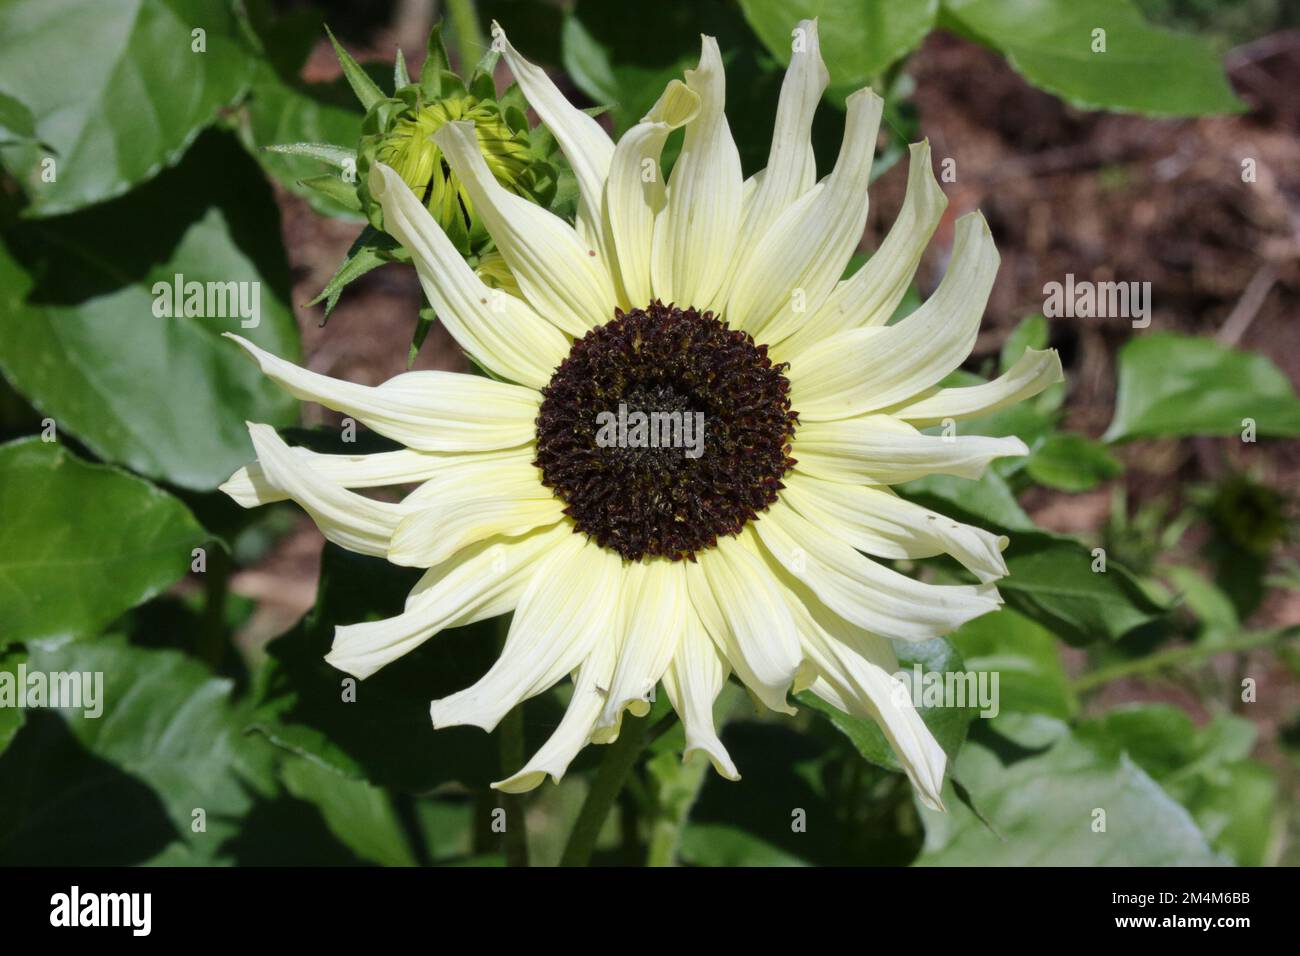 Helianthus debilis ssp cucumerifolius 'Italian White' Stock Photo